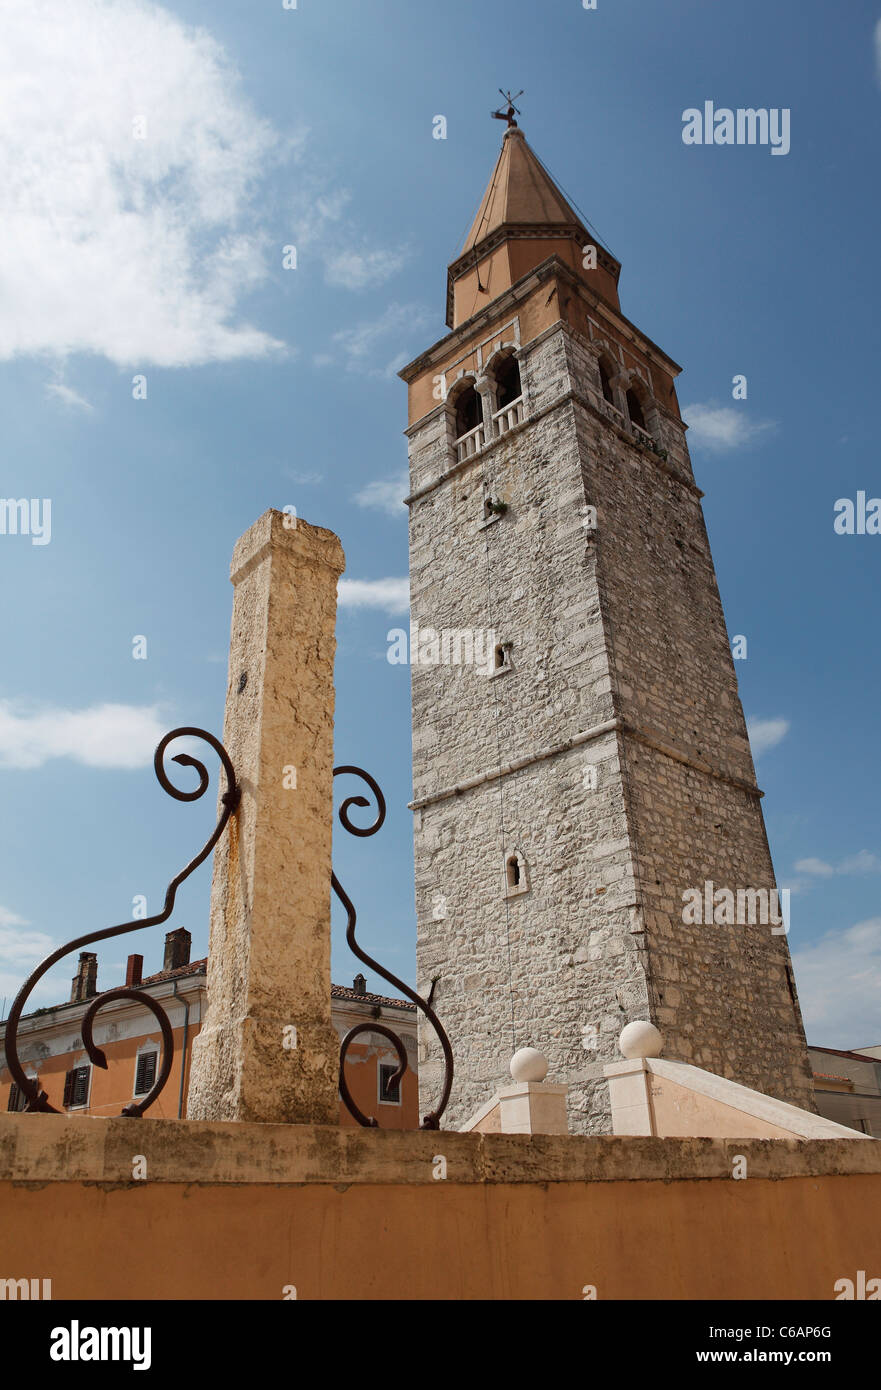 Glockenturm der Kirche Santa Maria in Umag, Kroatien. Stockfoto